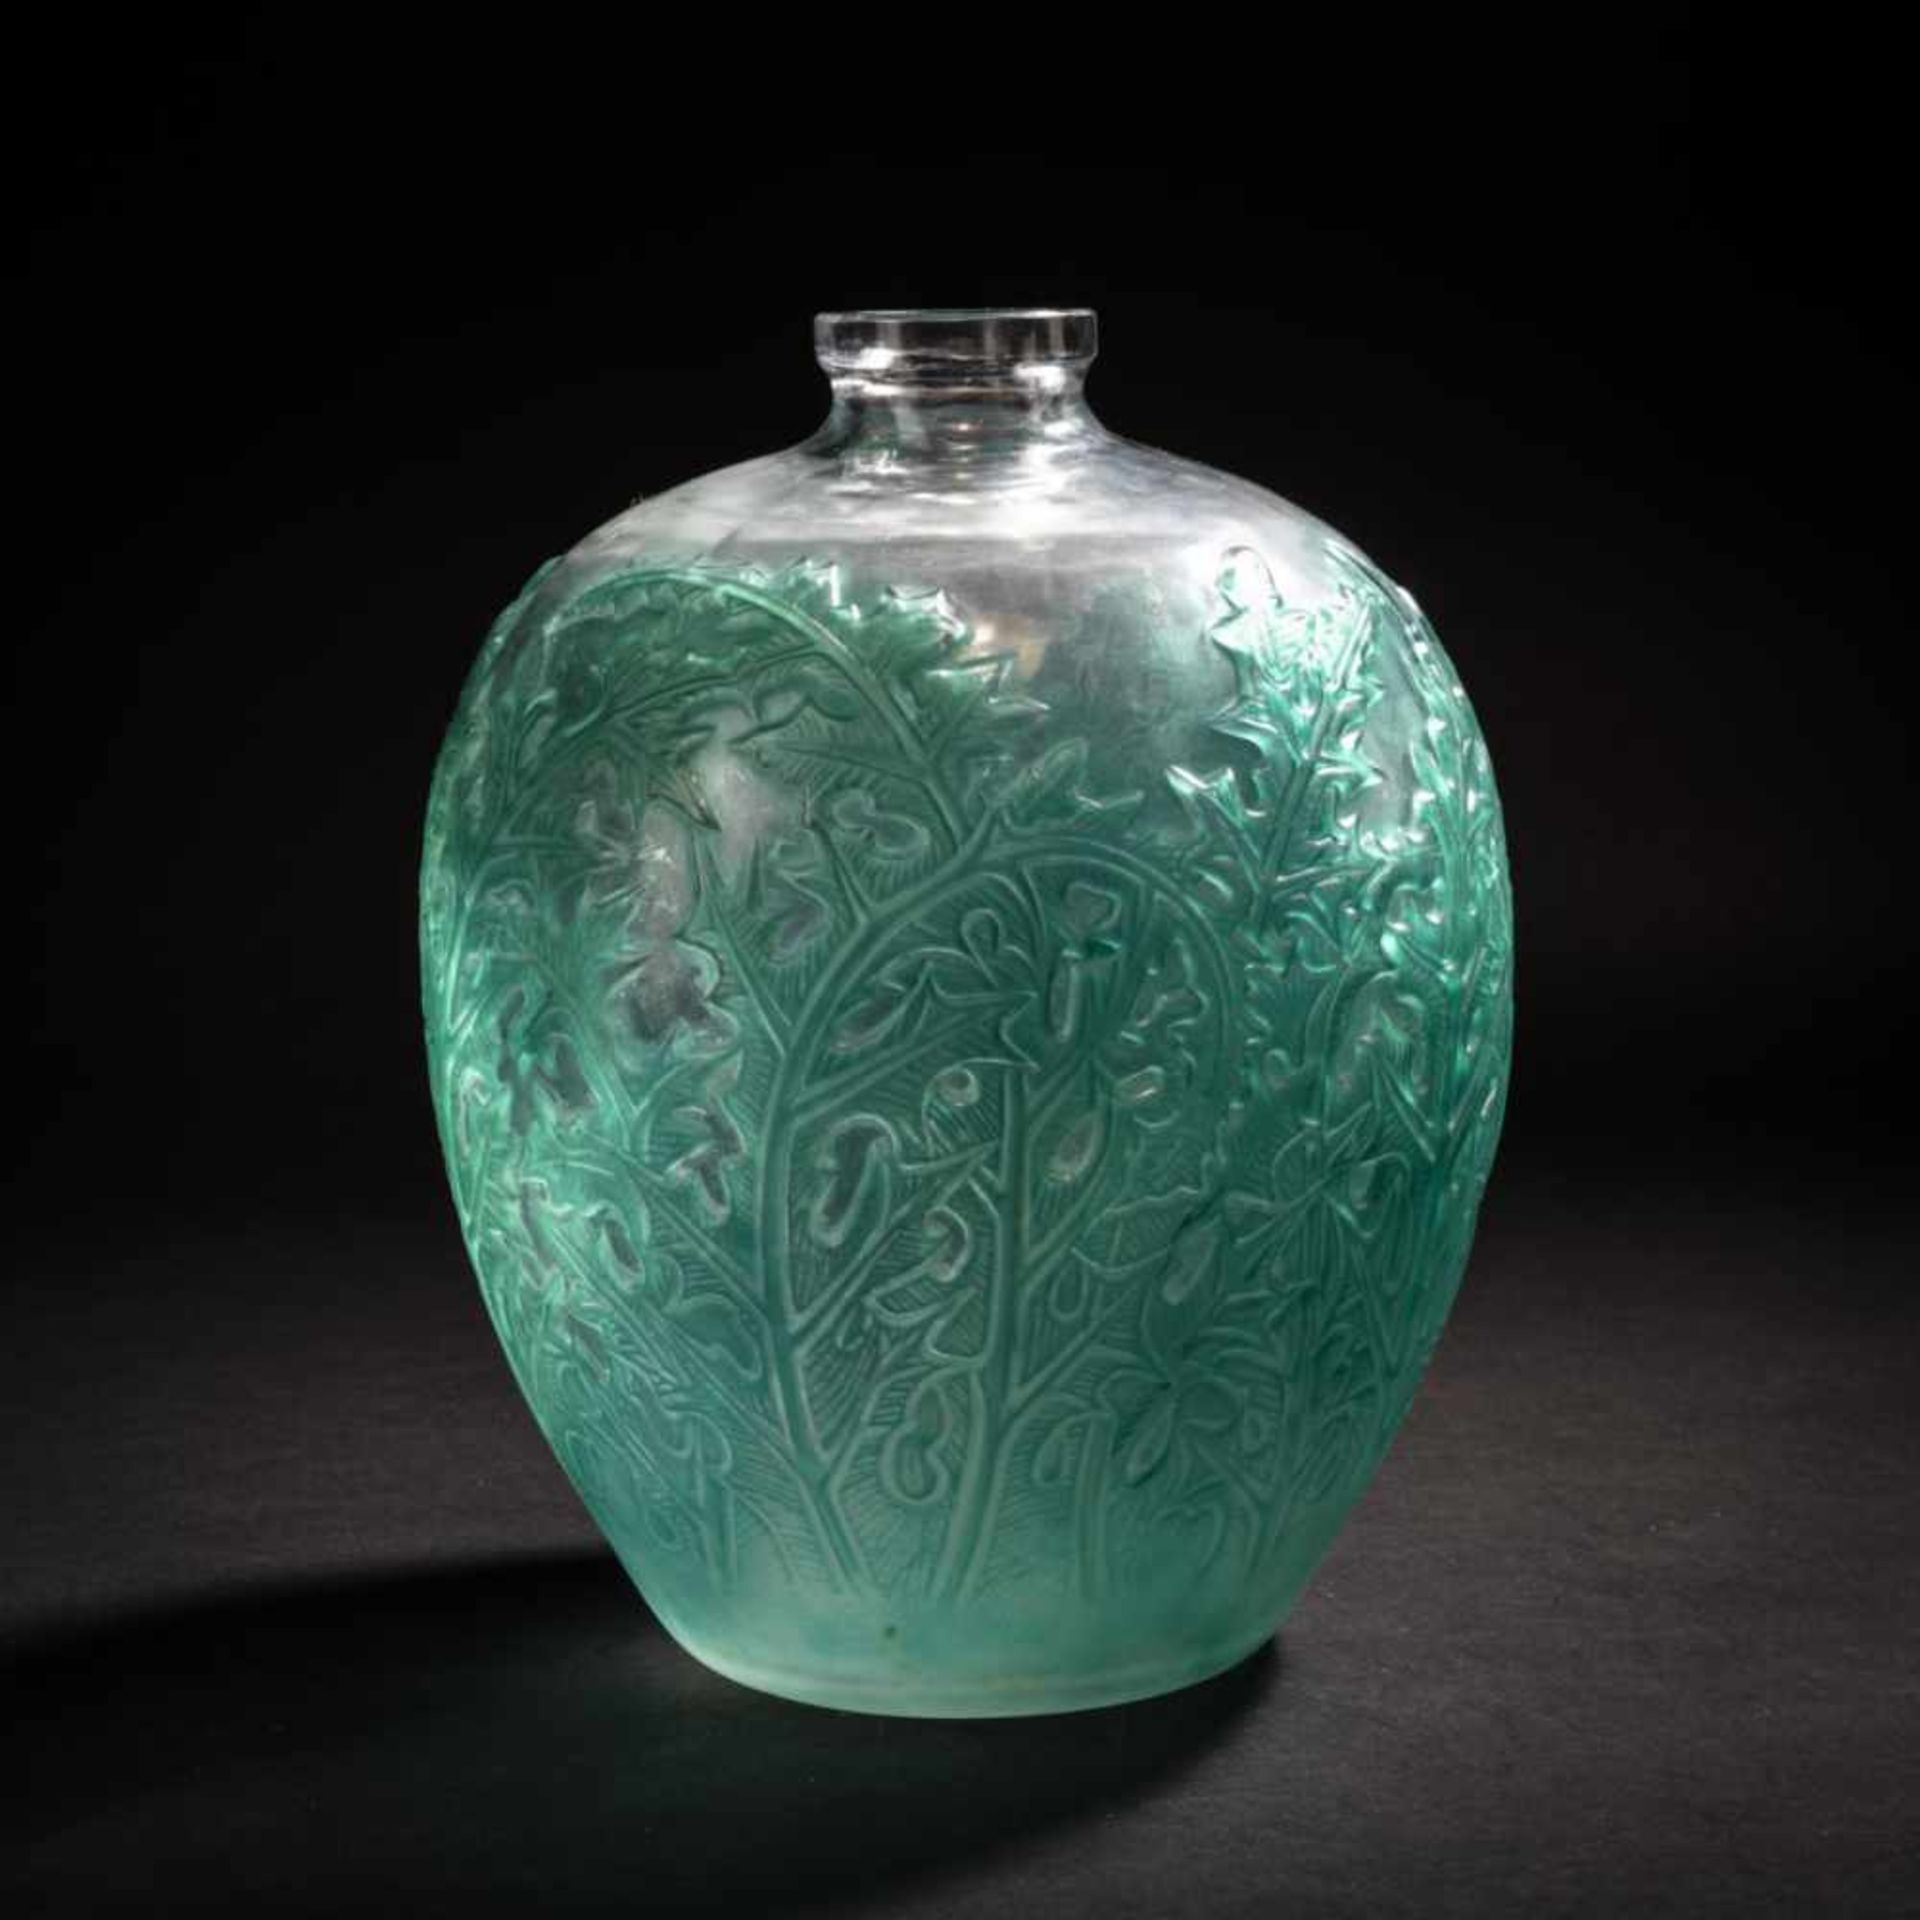 René Lalique, 'Acanthes' vase, 1921'Acanthes' vase, 1921H. 28.5 cm. Clear, mould-blown glass,